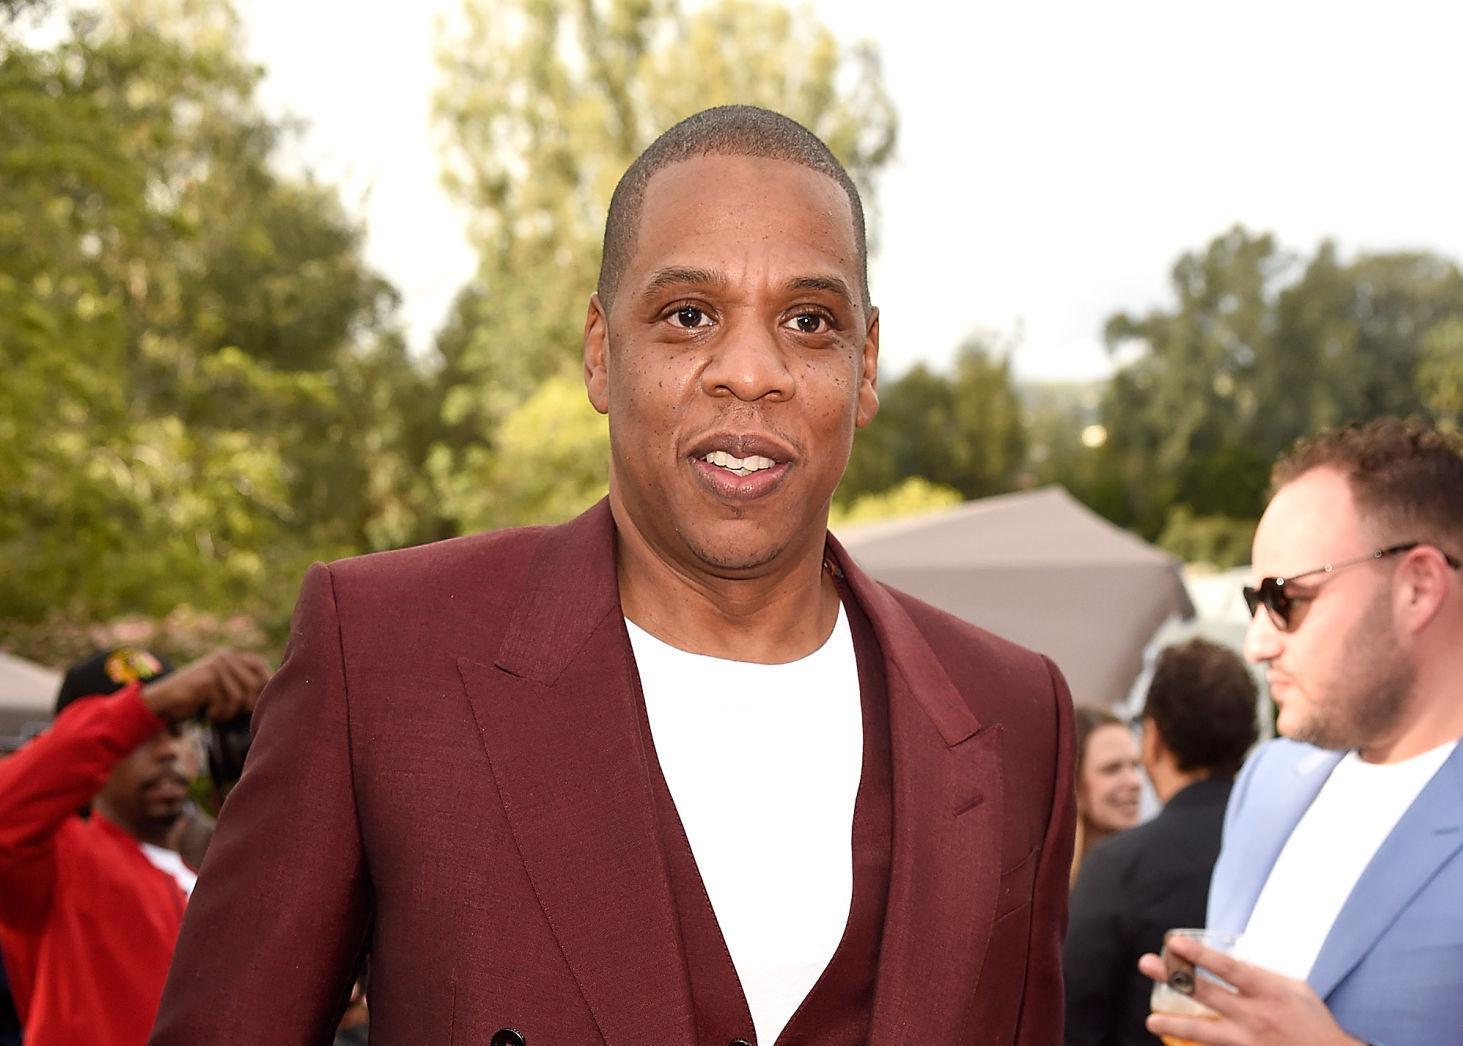 EKSKLUSIV BUSINESS: Jay-Z har lenge vært interessert i champagne. I 2014 kjøpte han like gjerne sitt eget champagne-selskap. Foto: Kevin Mazur/Getty Images